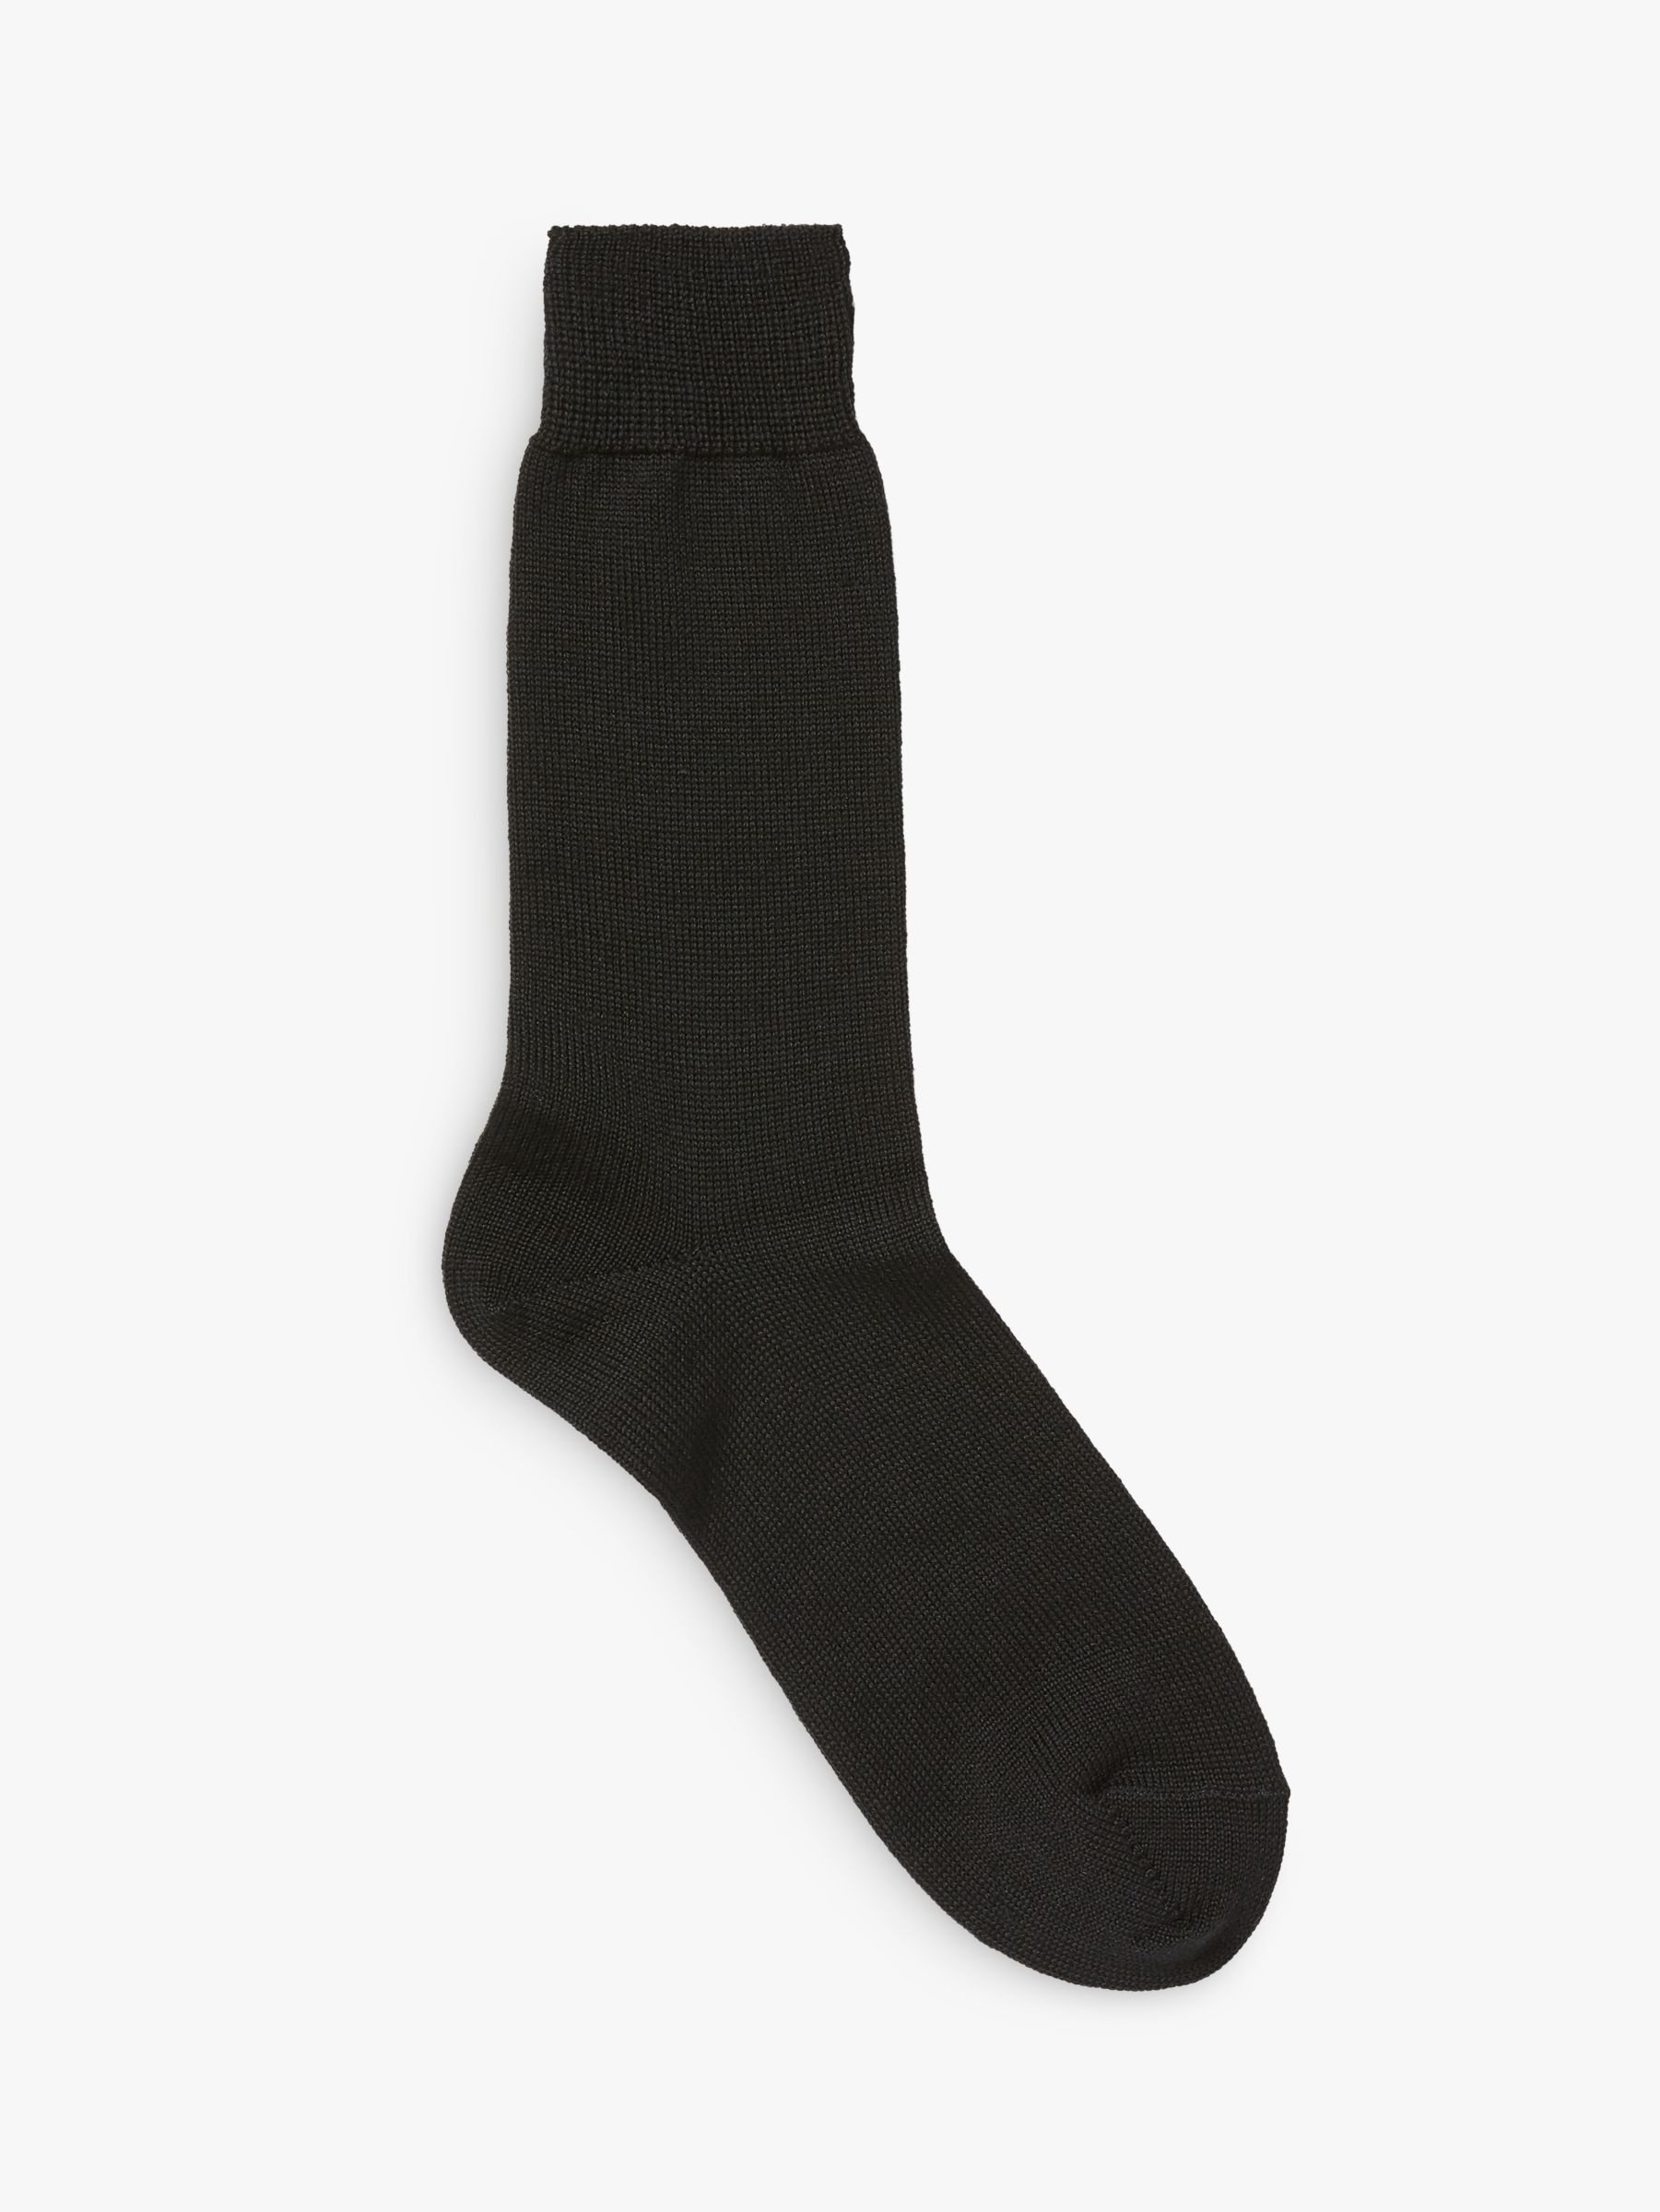 John Lewis & Partners Made in Italy Merino Blend Short Socks, Black, S